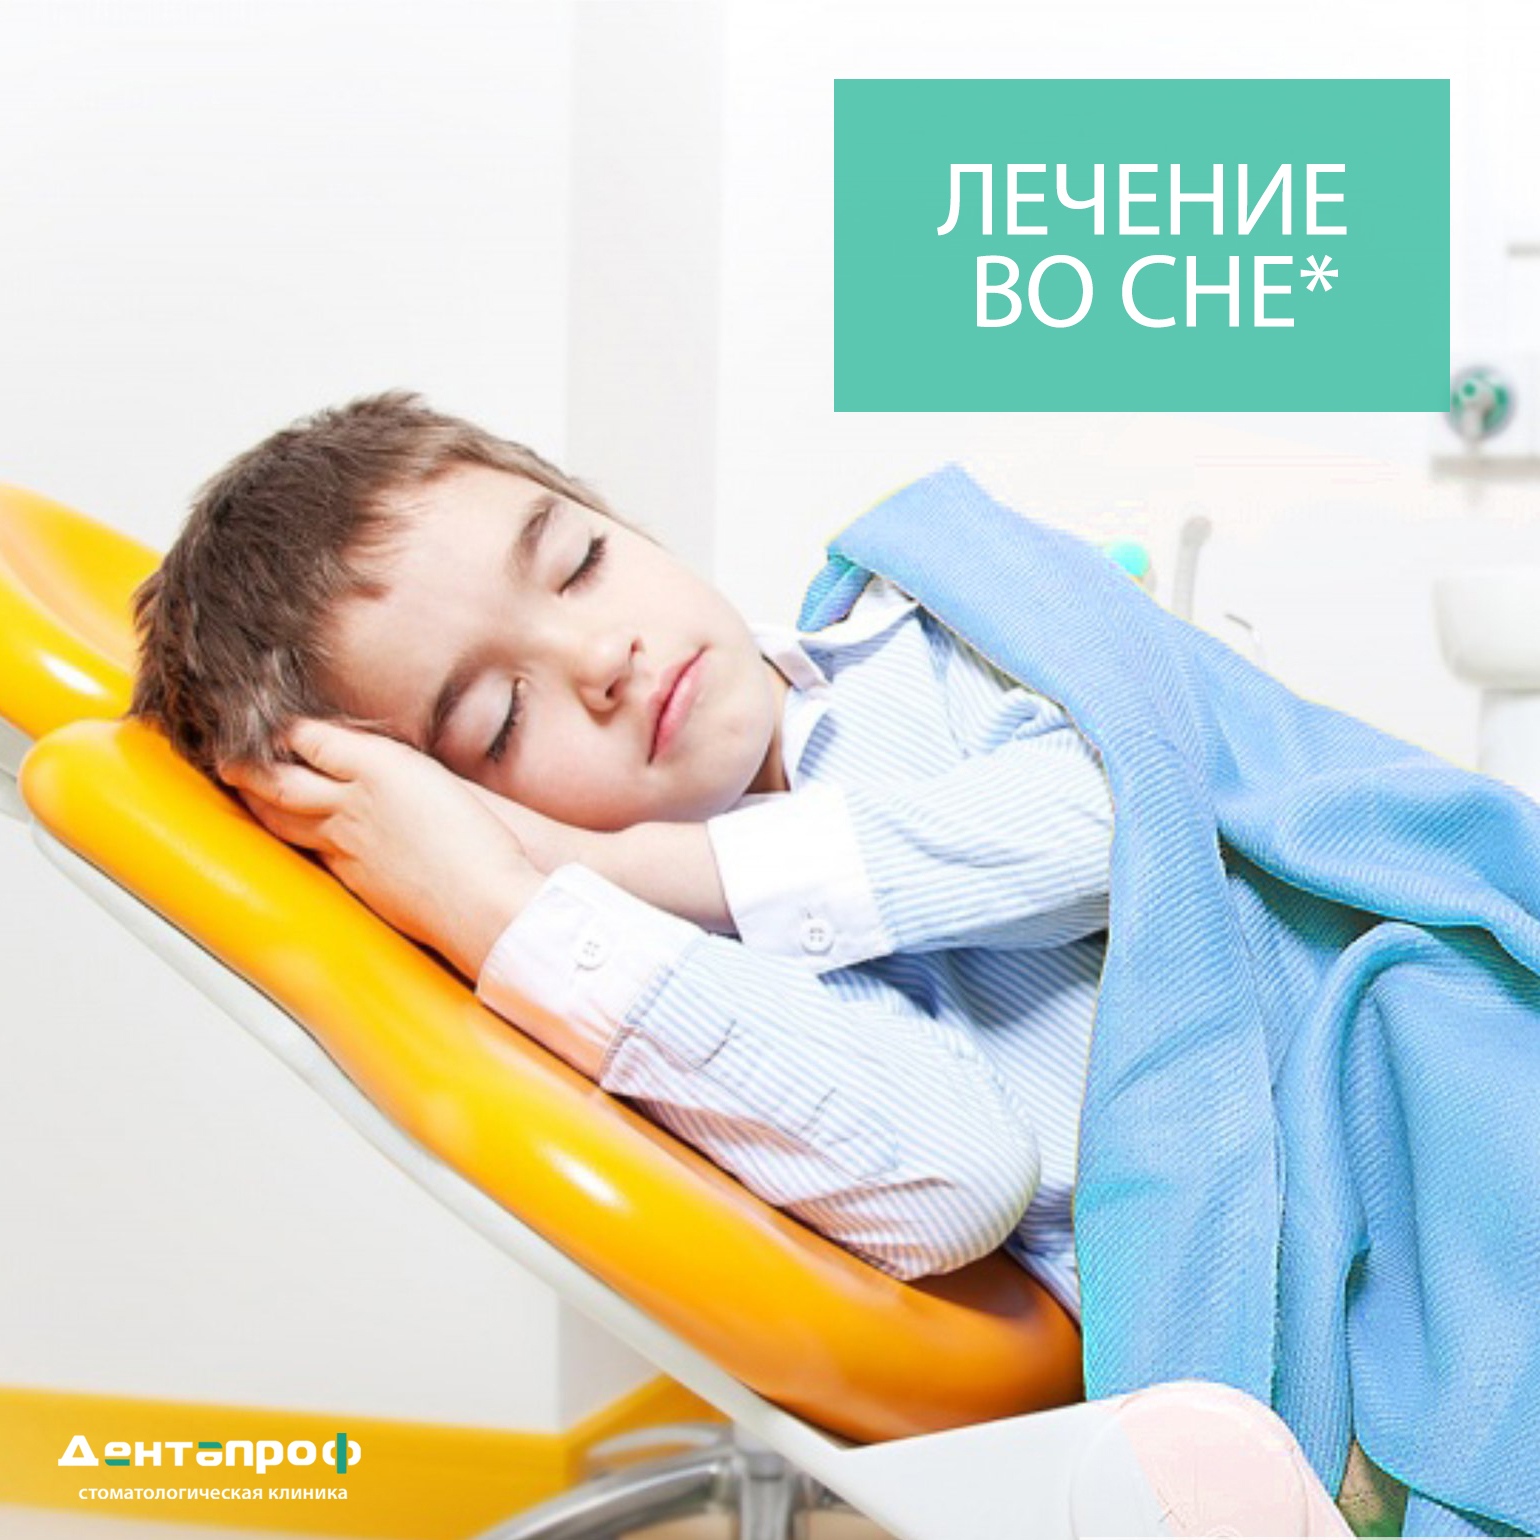 Детская стоматология во сне